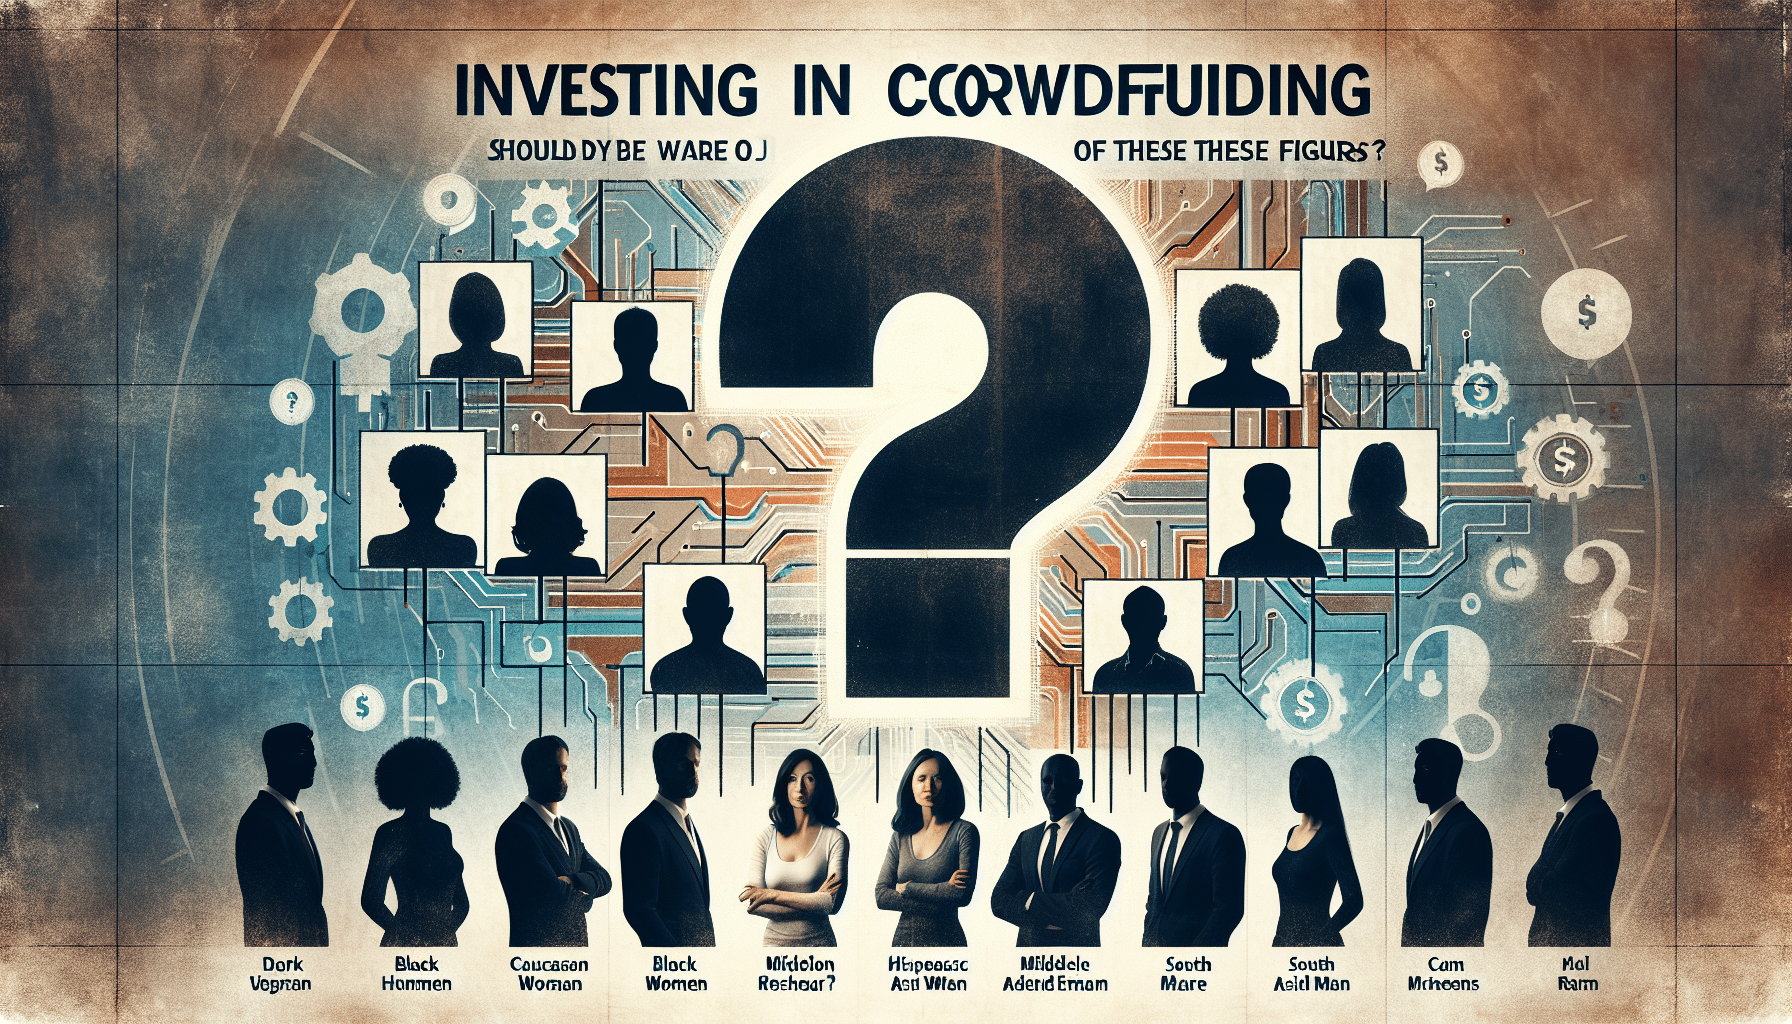 découvrez les risques potentiels de l'investissement dans le crowdfunding à travers l'analyse de 7 chiffres clés. apprenez à vous prémunir et à faire les choix judicieux pour vos investissements.